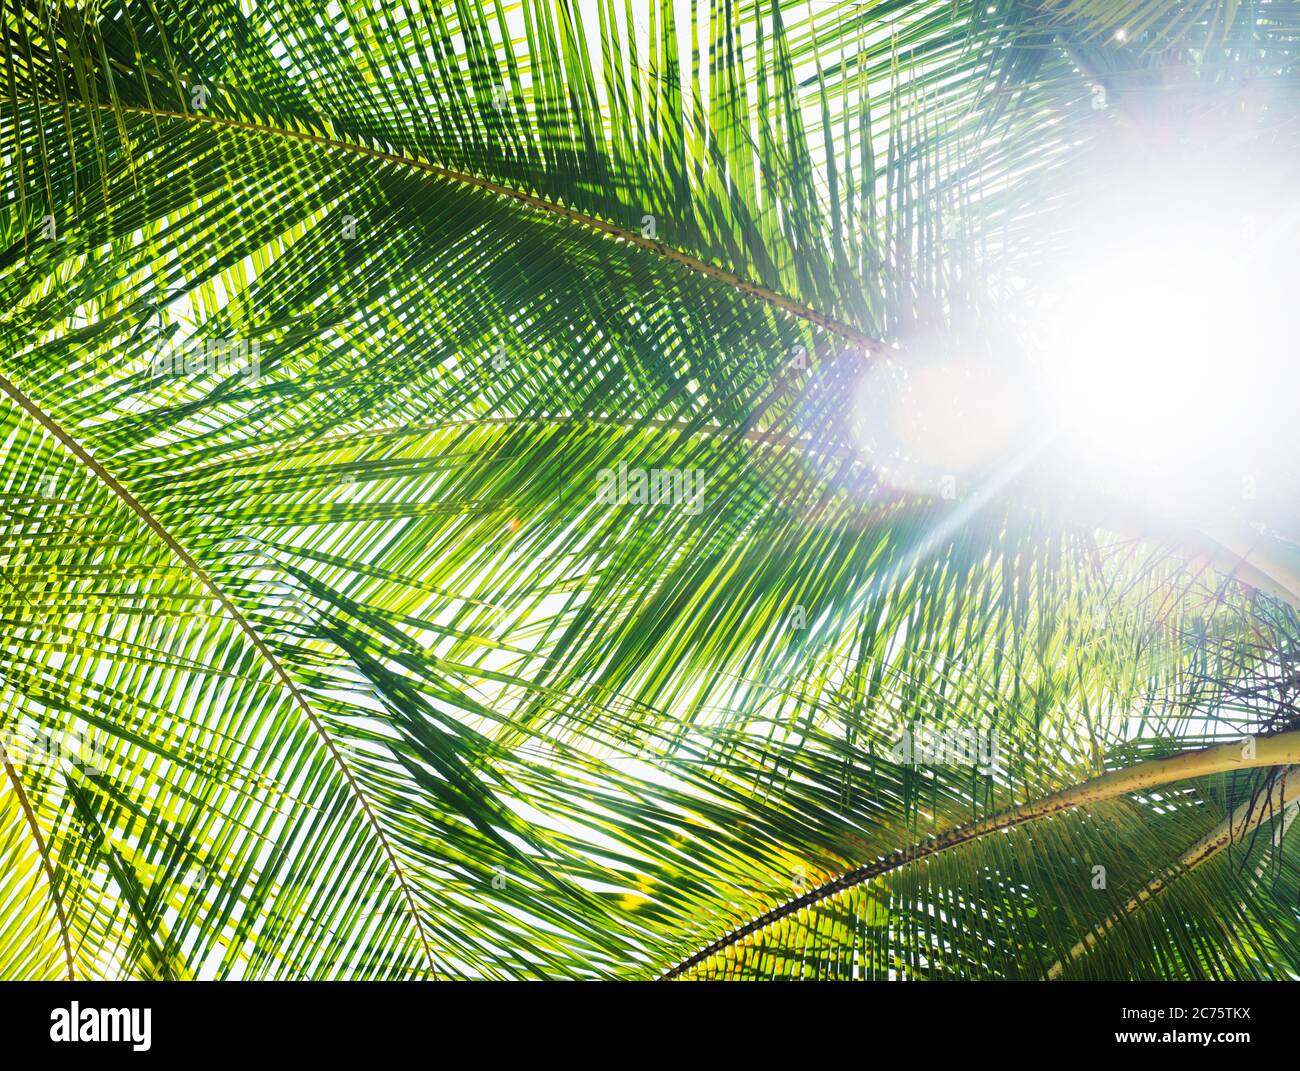 Hojas de palmera de la isla Coiba, santa catalina, Panamá, Centroamérica Foto de stock